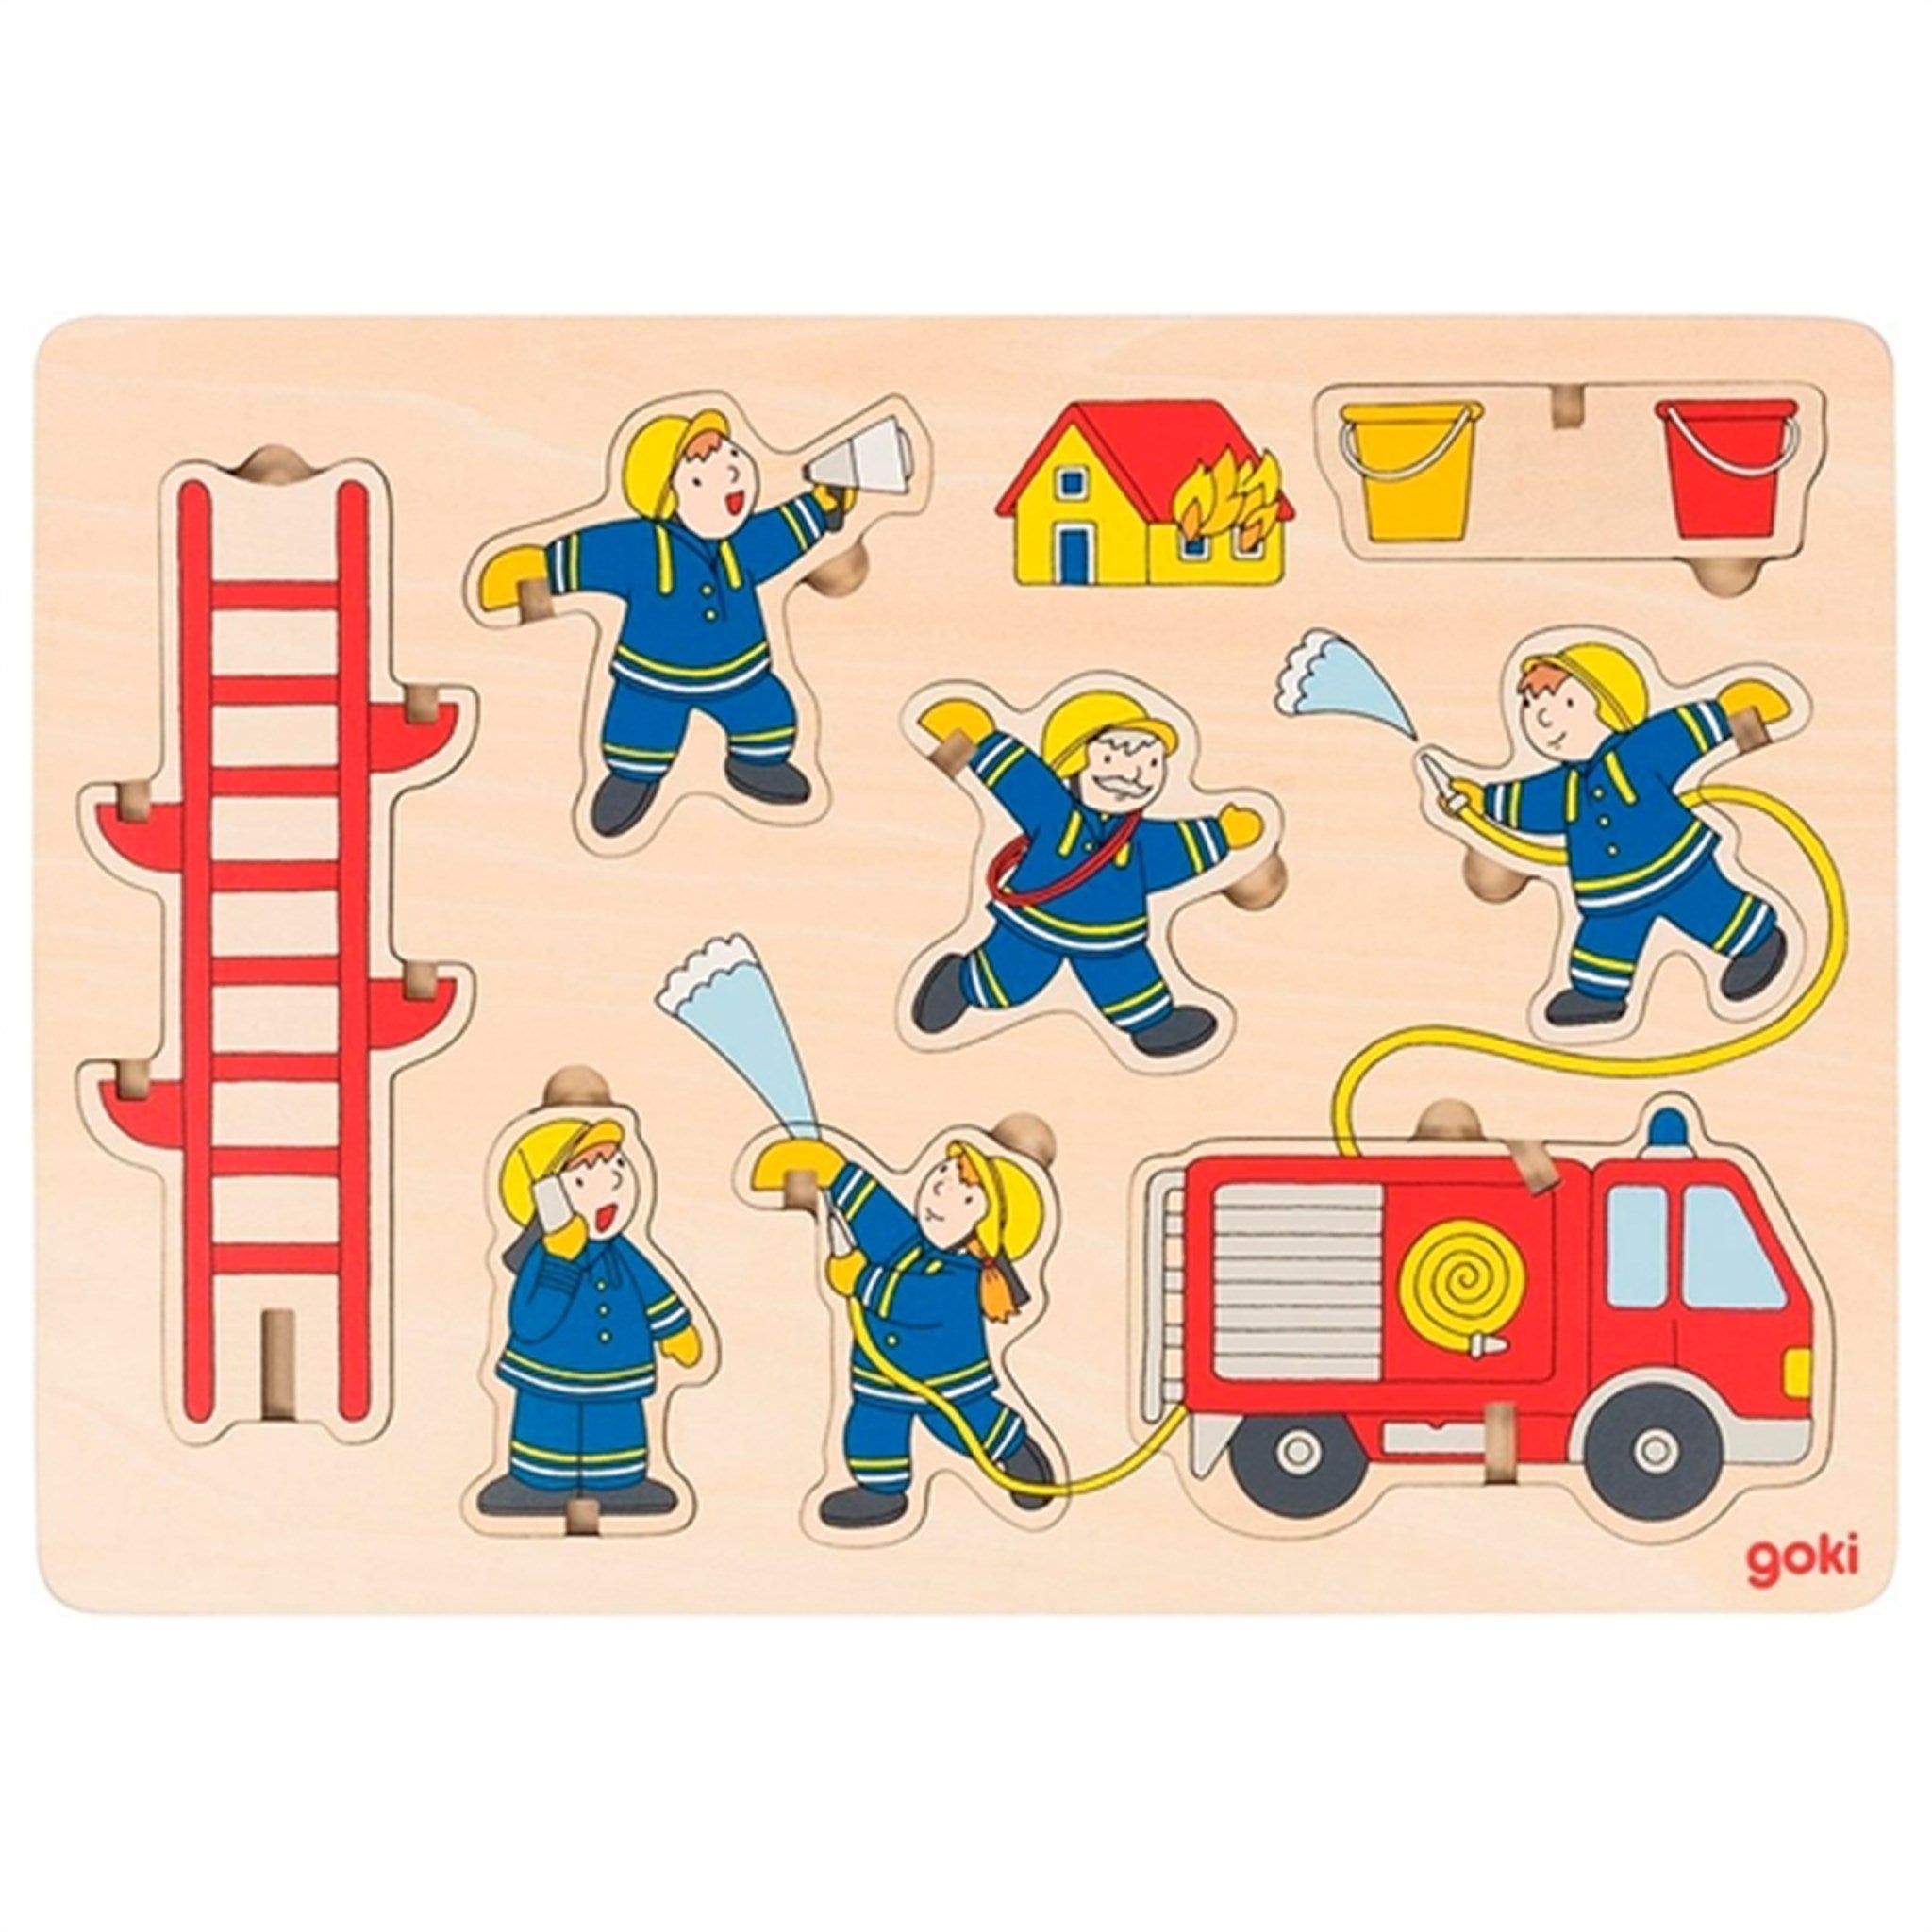 Goki Puzzle - Fire Department